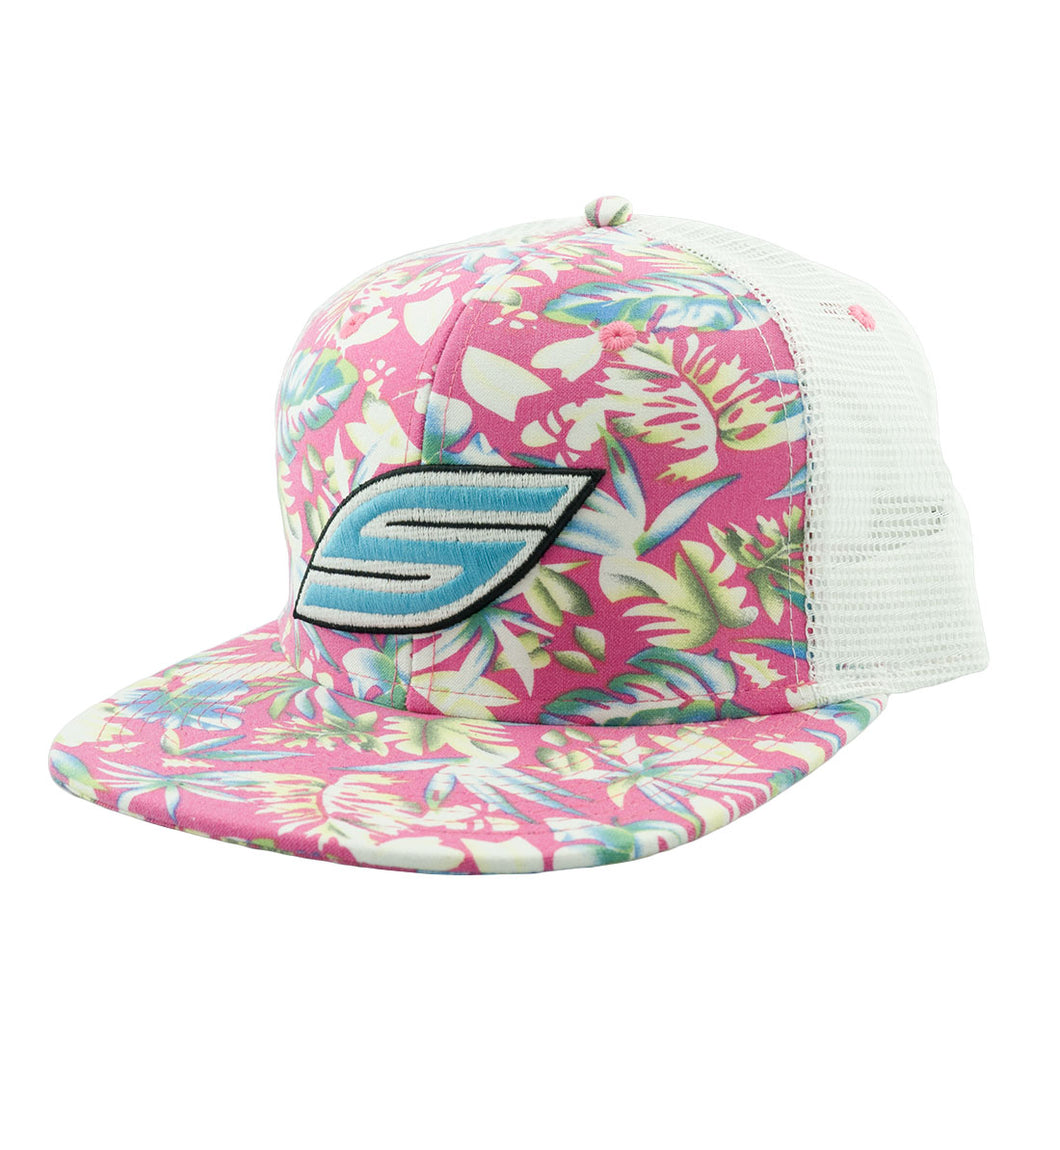 Snapback Hat, Pink Flower Trucker